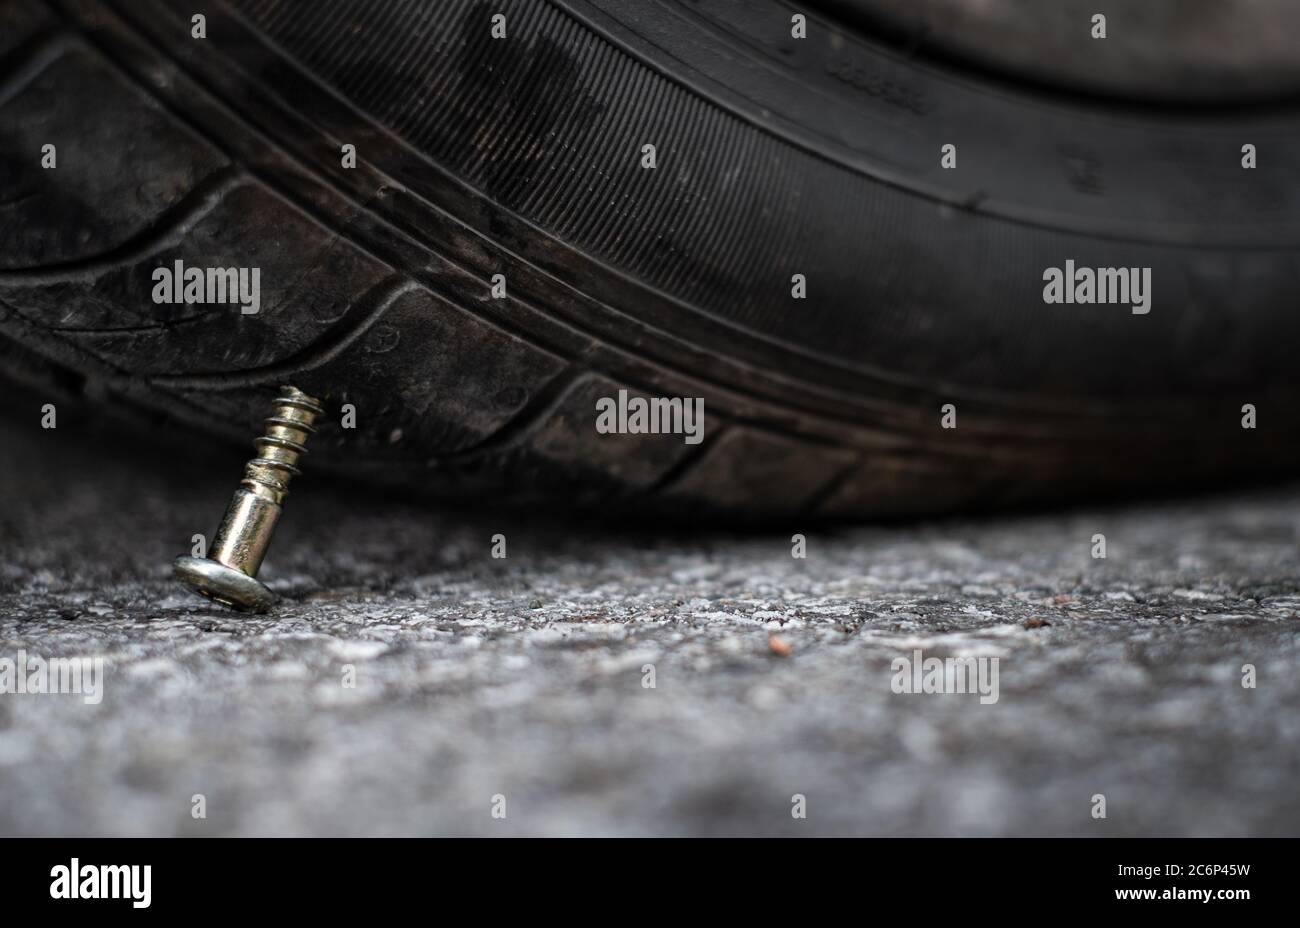 Gros plan de la tête de bouton aiguille de la vis métallique clou coincé  pour percer dans le pneu de roue sur la route Photo Stock - Alamy